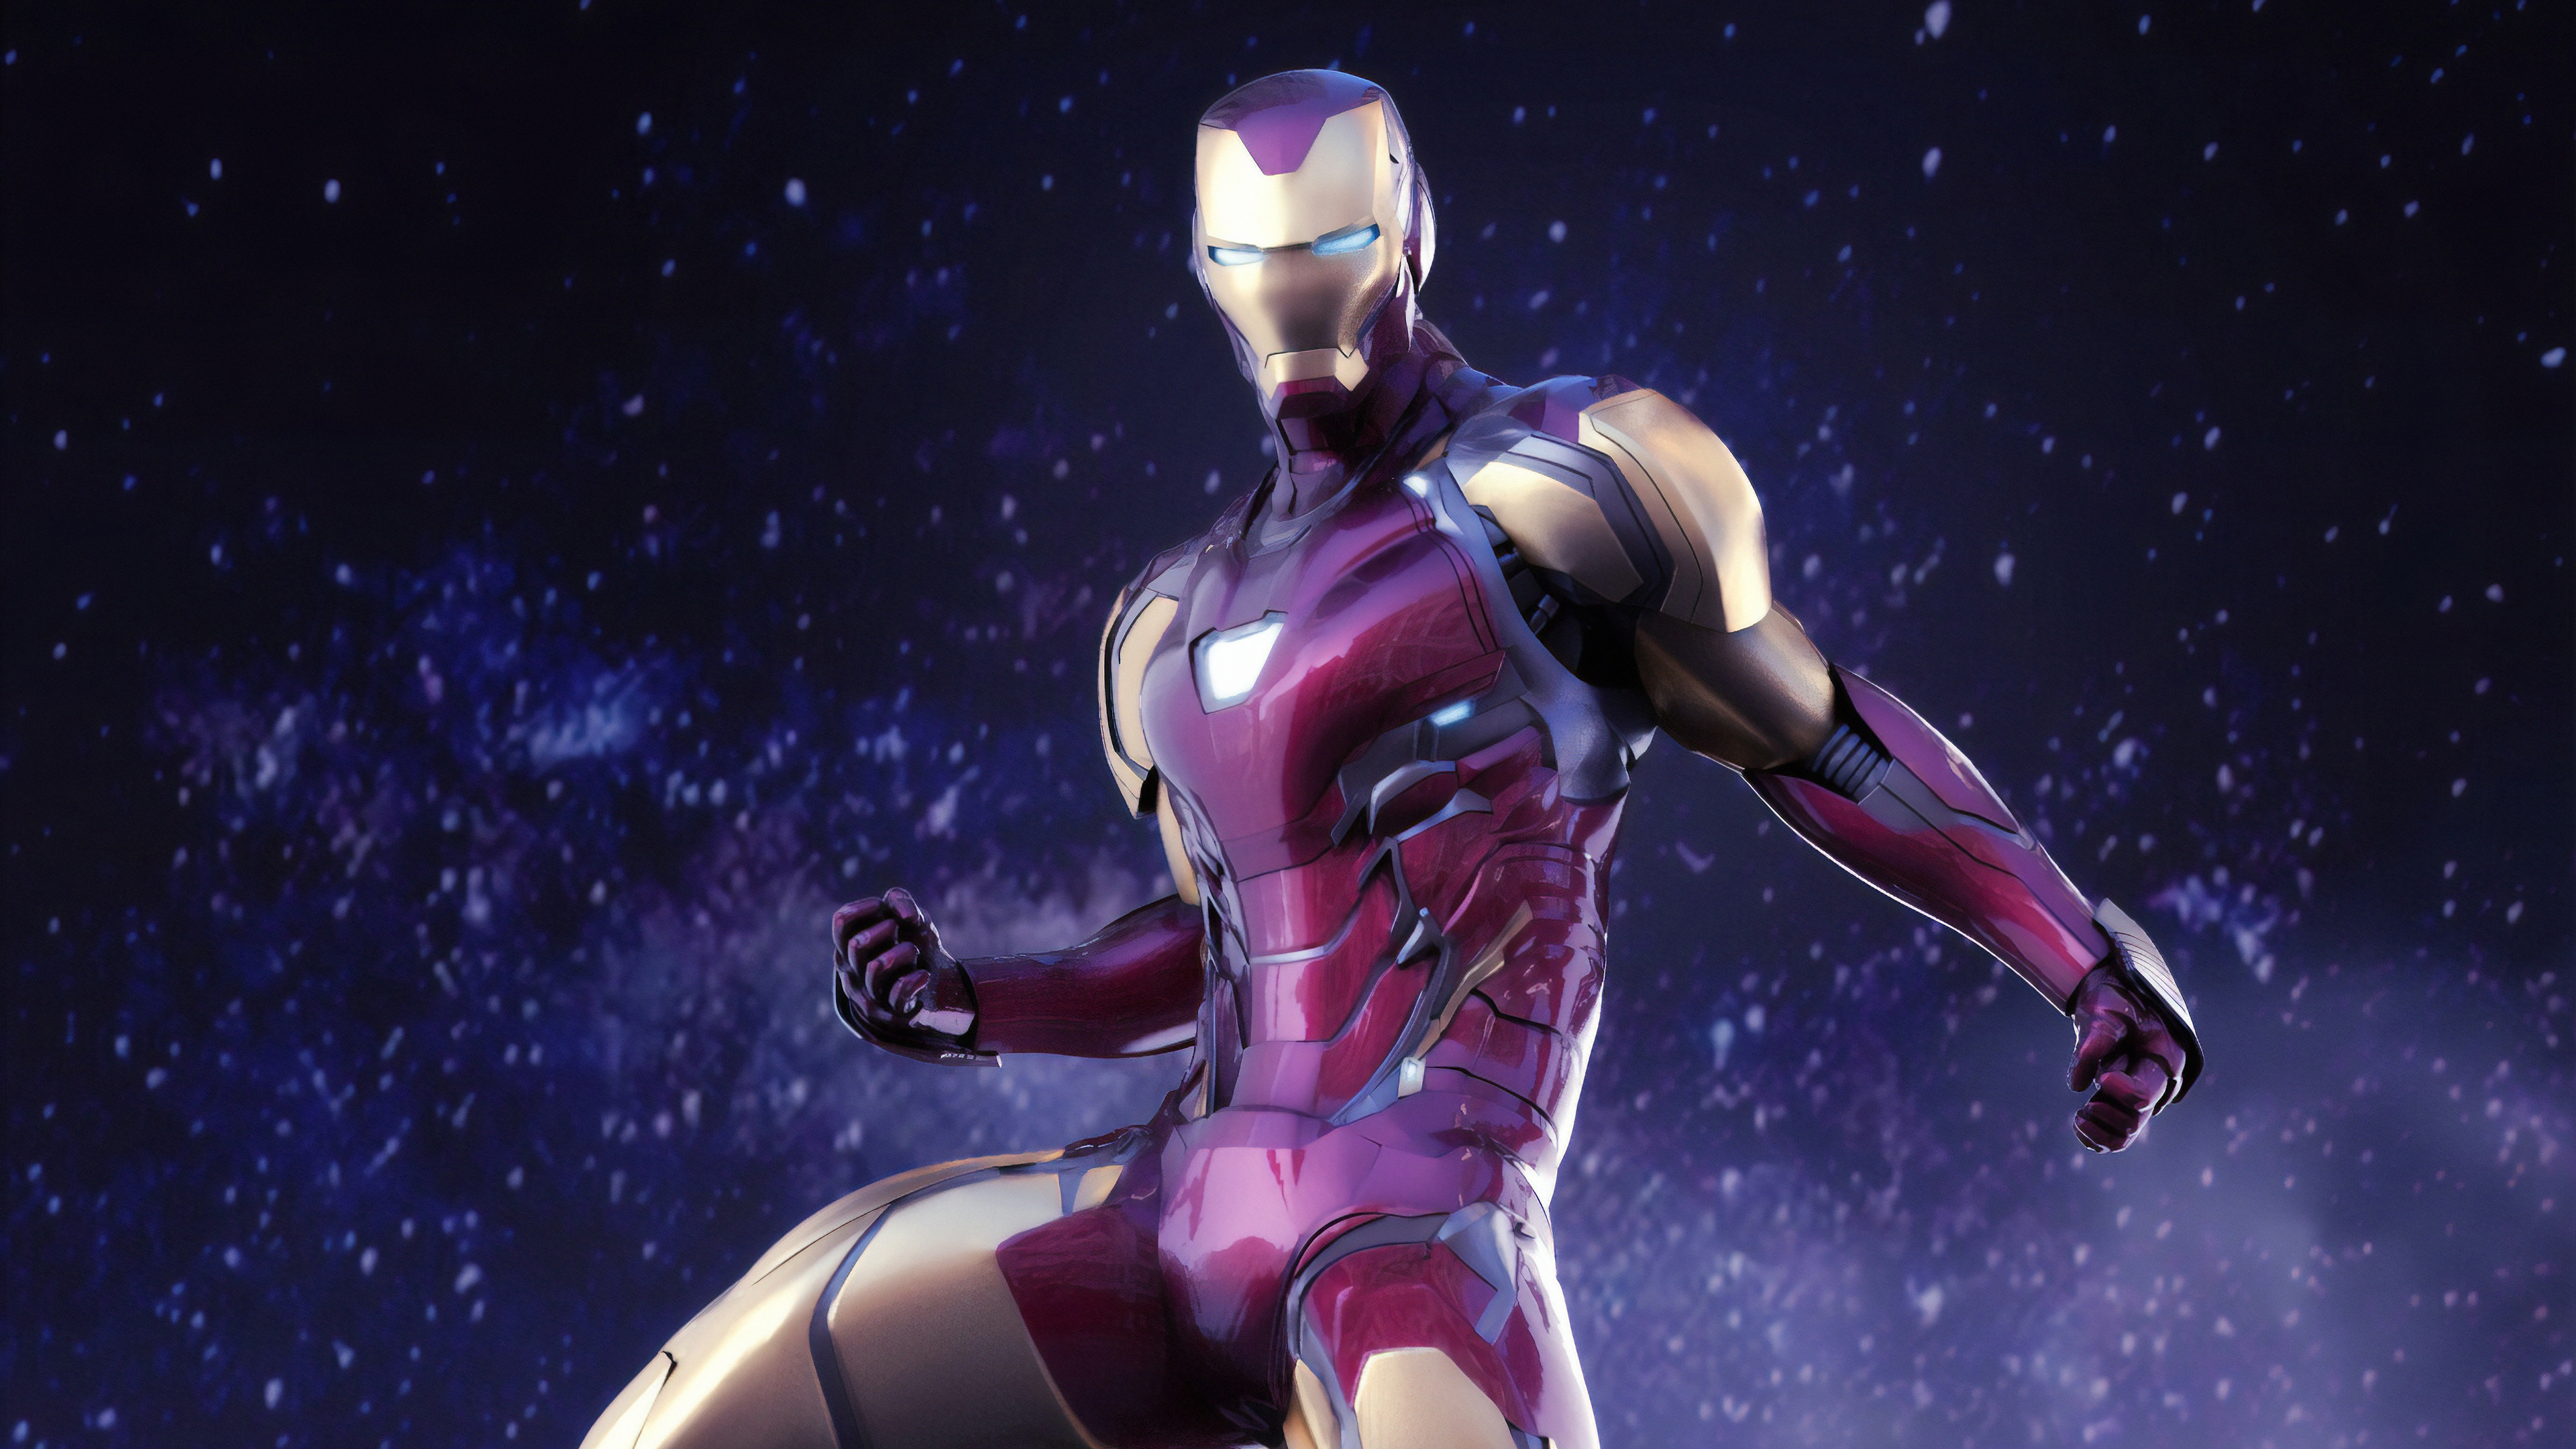 Chiêm ngưỡng bộ giáp đầy bí ẩn và nổi tiếng của Iron Man trong phim kinh điển của Marvel - Avengers Endgame, và lấy cảm hứng từ chúng để trang trí trên chiếc laptop của bạn, với chất lượng độ phân giải 1080P. Hãy xem những bức ảnh thu hút này và cùng thả hồn vào thế giới siêu anh hùng.